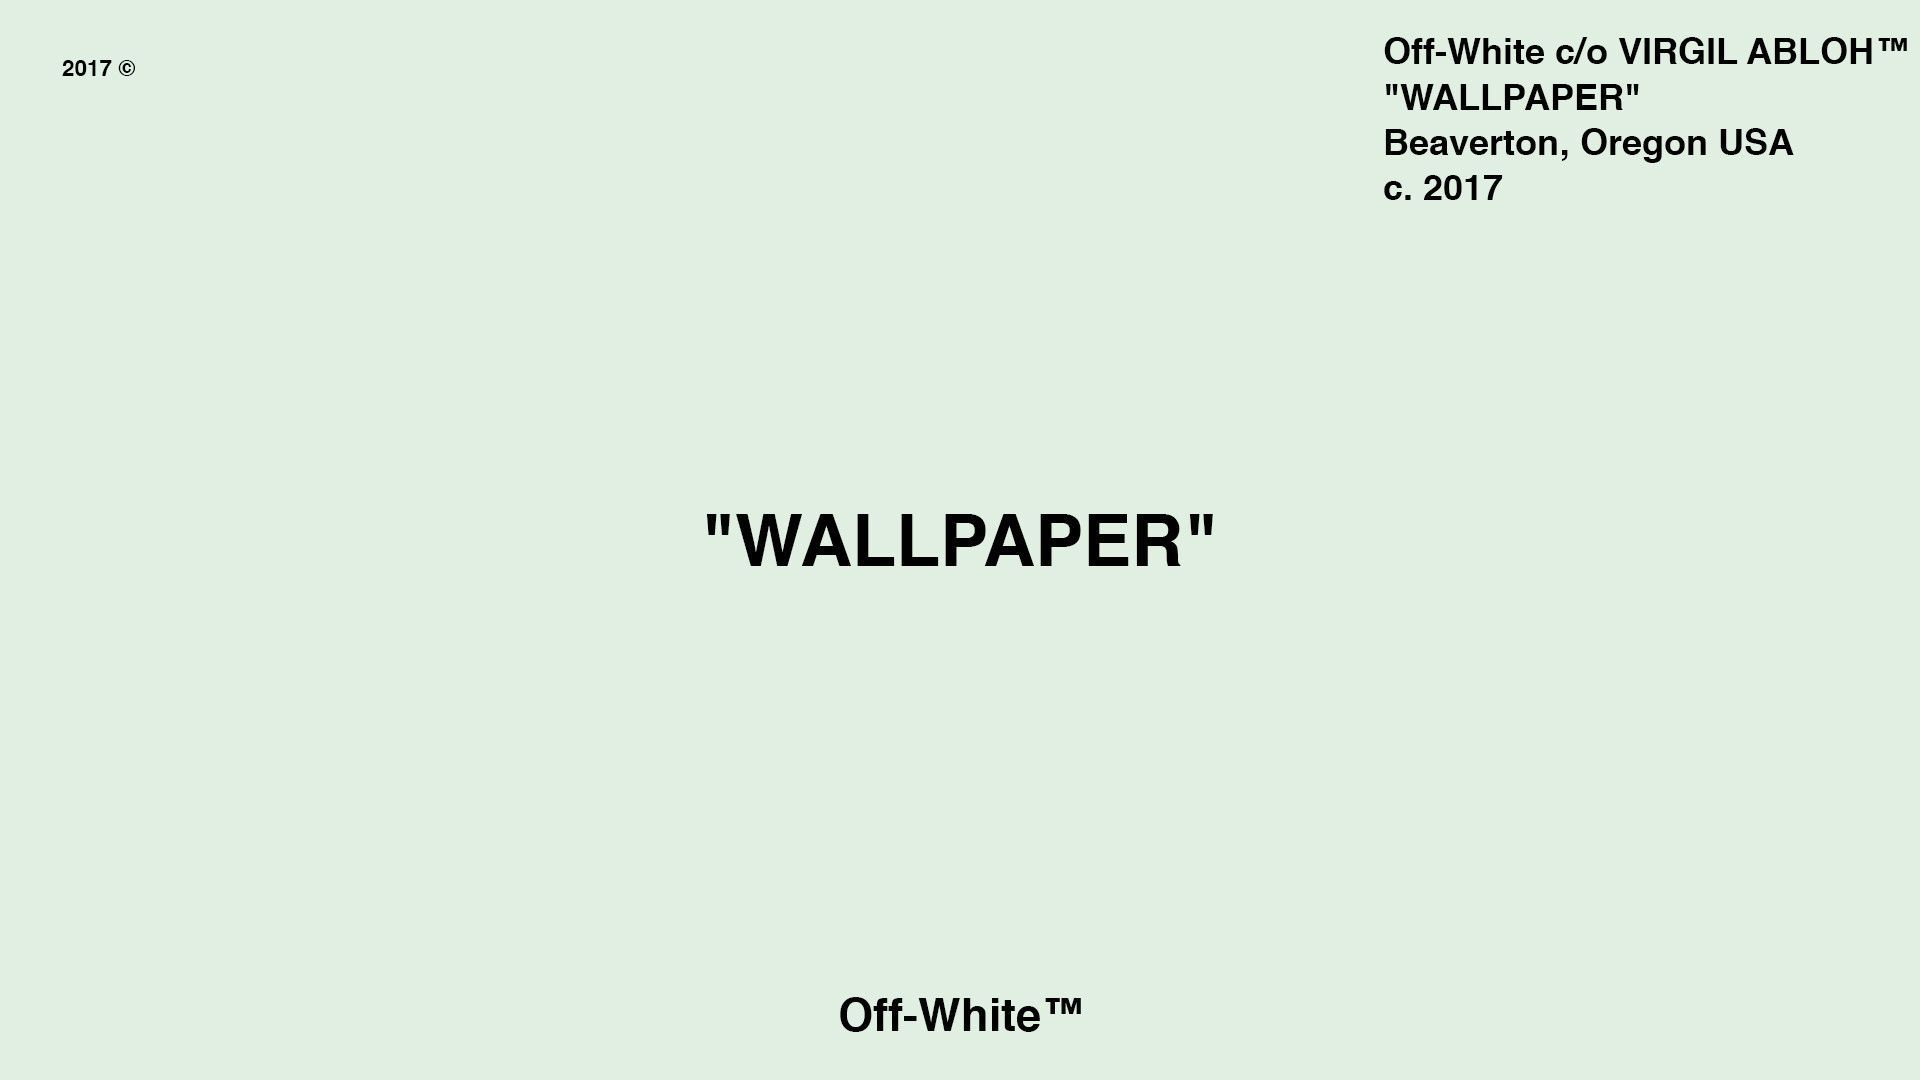 Supreme x Off-White collaboration wallpaper Virgil Abloh™/ Supreme®